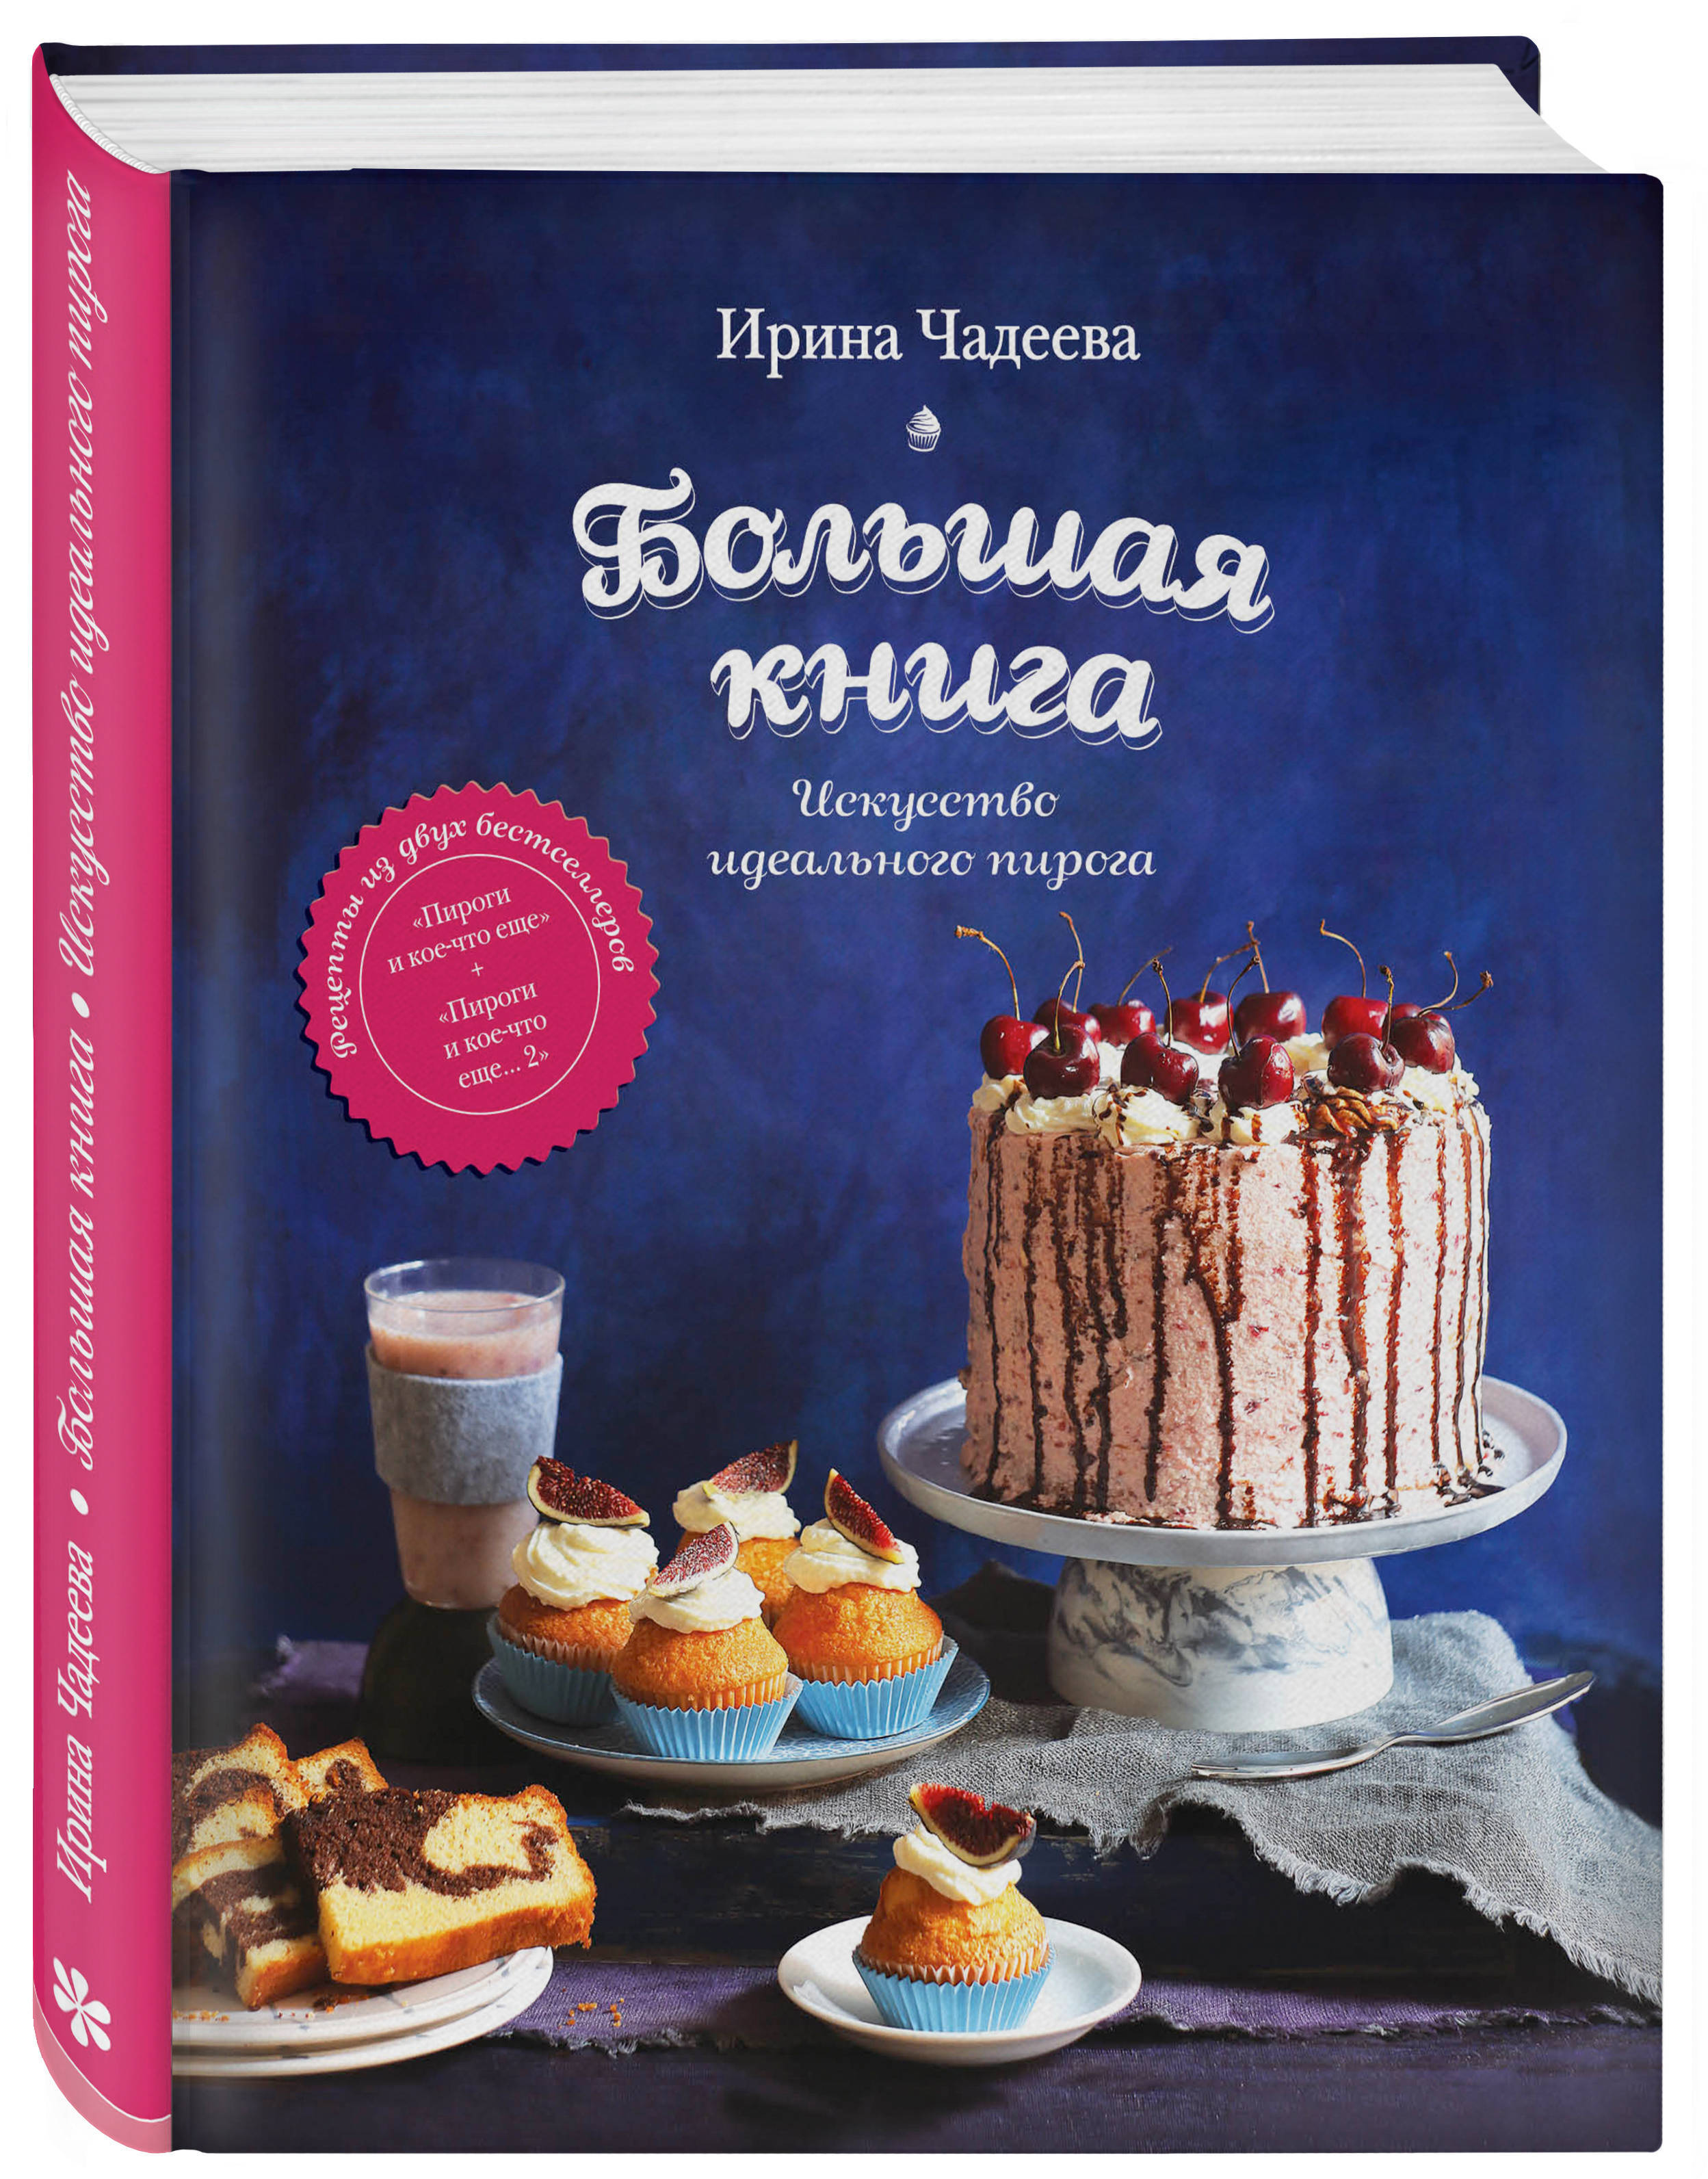 Книги про рецепты. Чадеева и. «искусство идеального пирога. Большая книга». Торт книга.